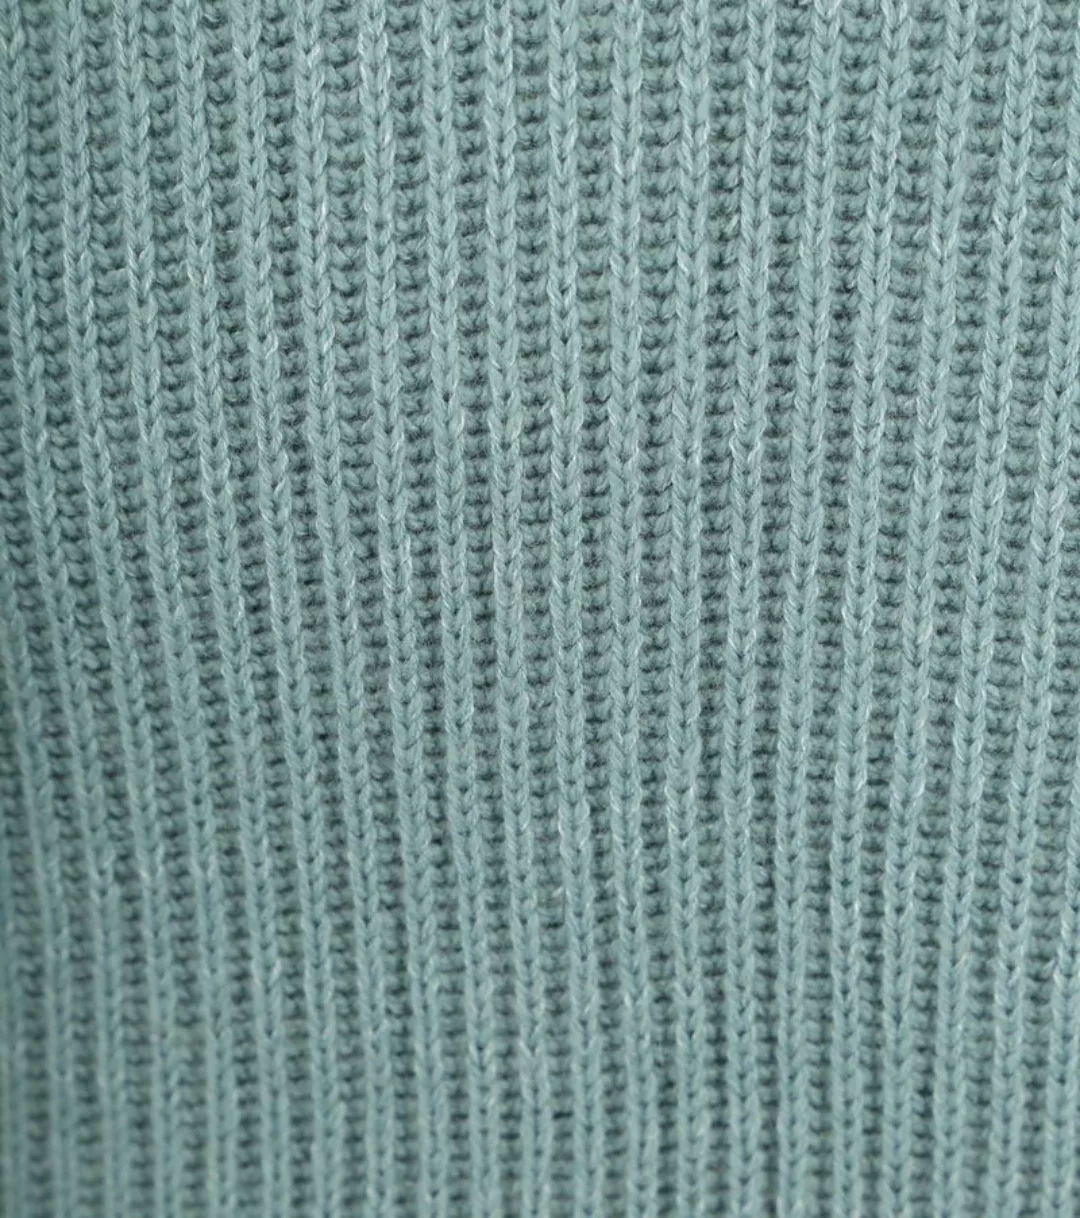 Marc O'Polo Pullover Wool Blend Stahlblau - Größe M günstig online kaufen